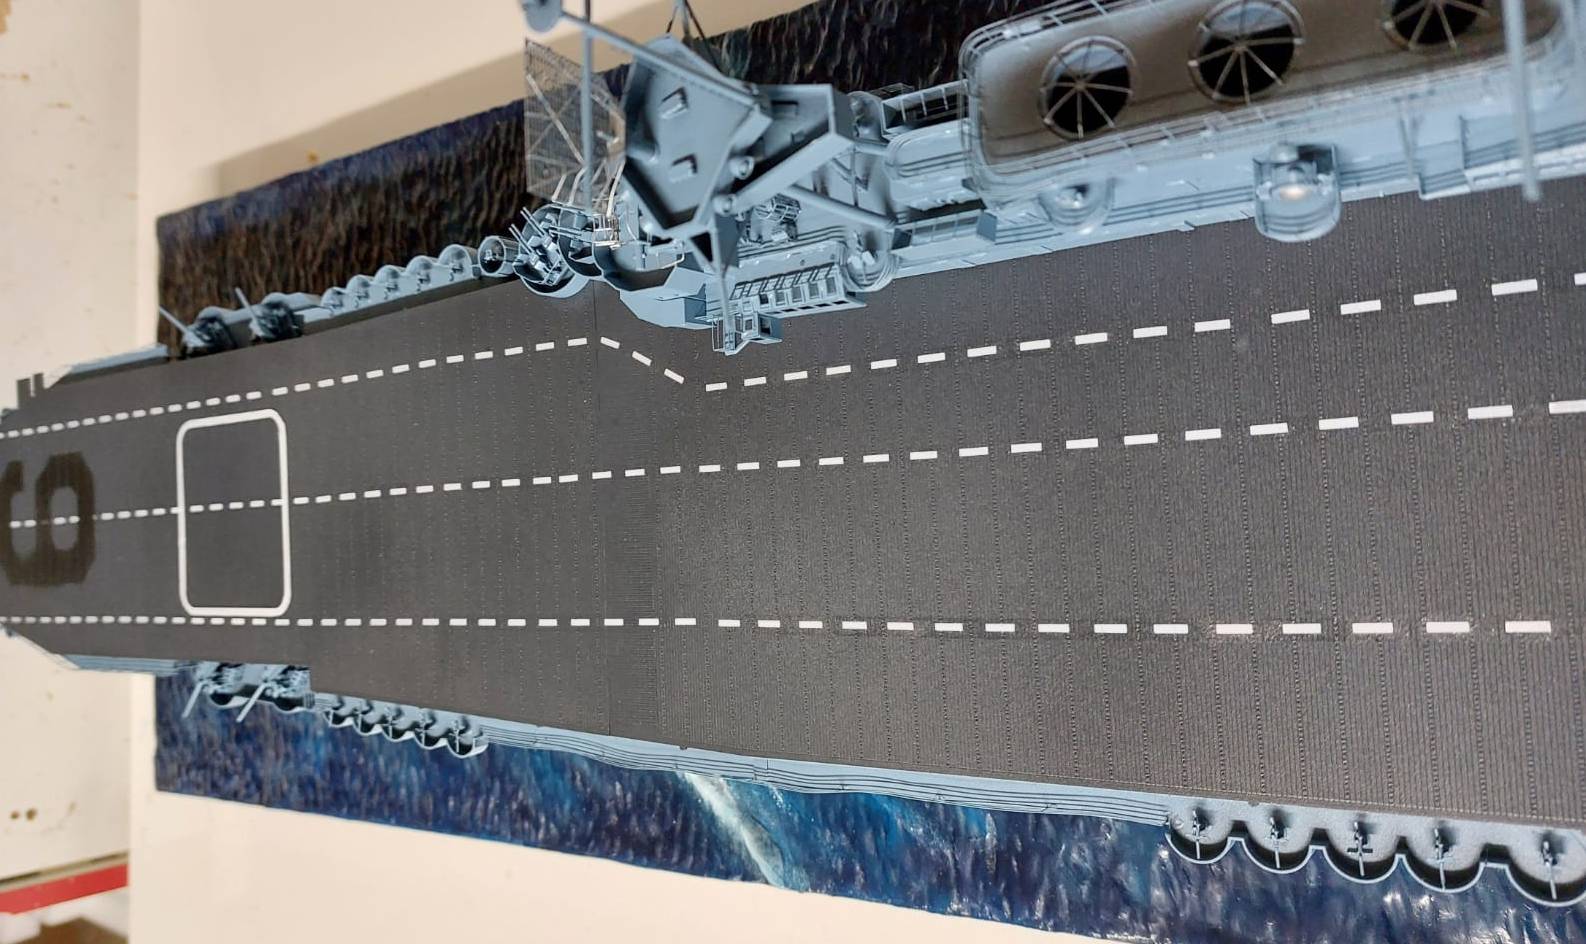 Das Deck der USS Enterprise CV-6 in voller Länge.